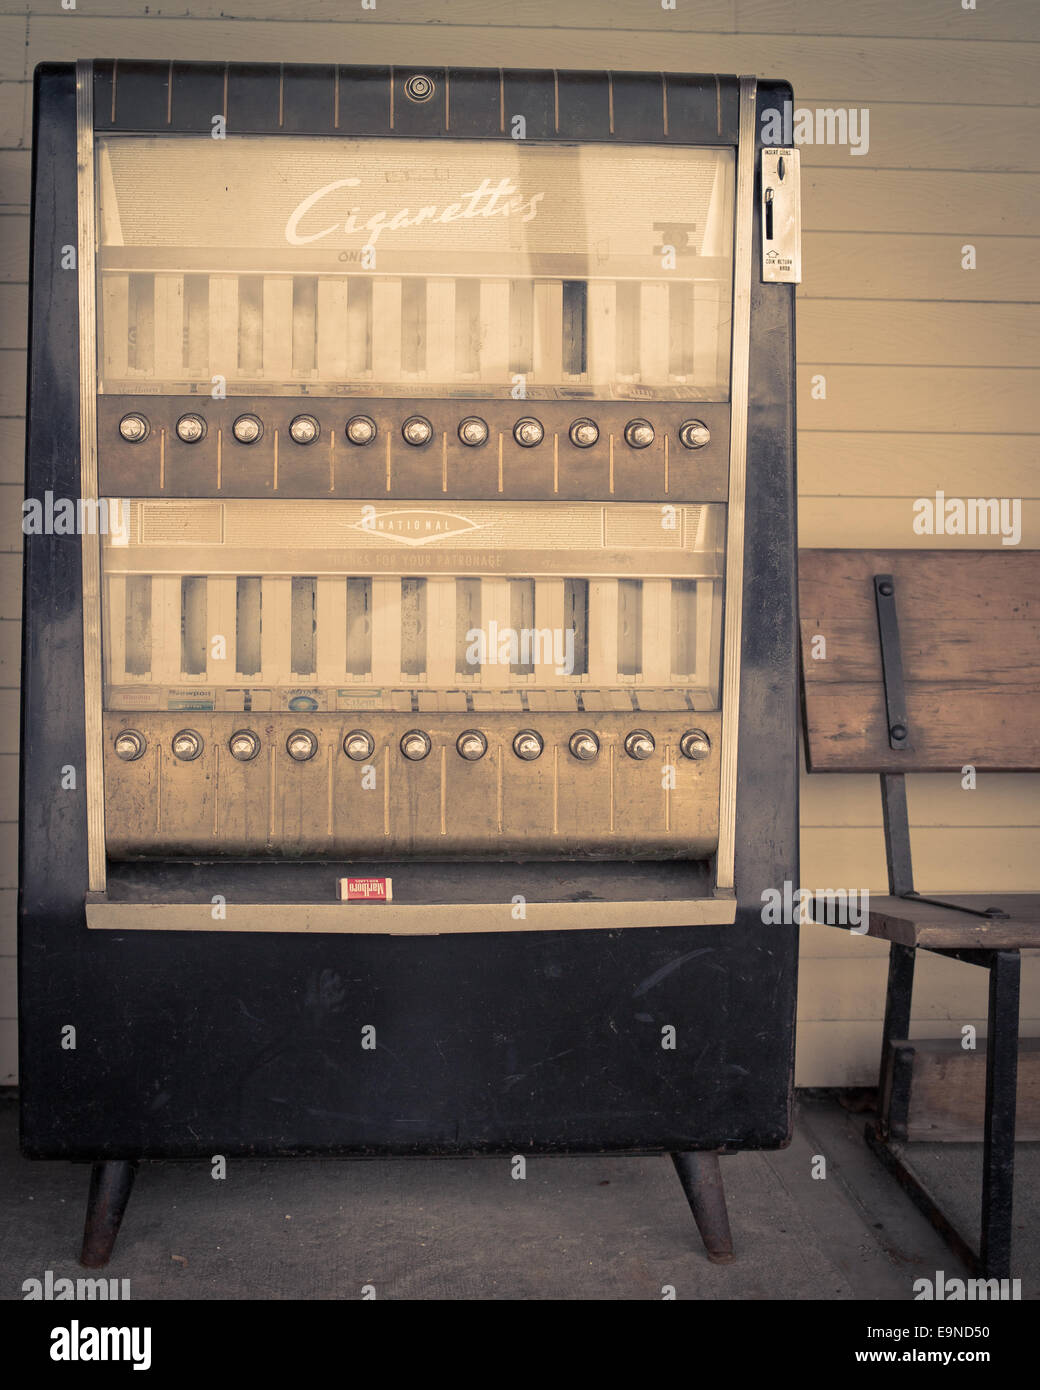 Une vieille cigarette coin-op distributeur automatique. Banque D'Images